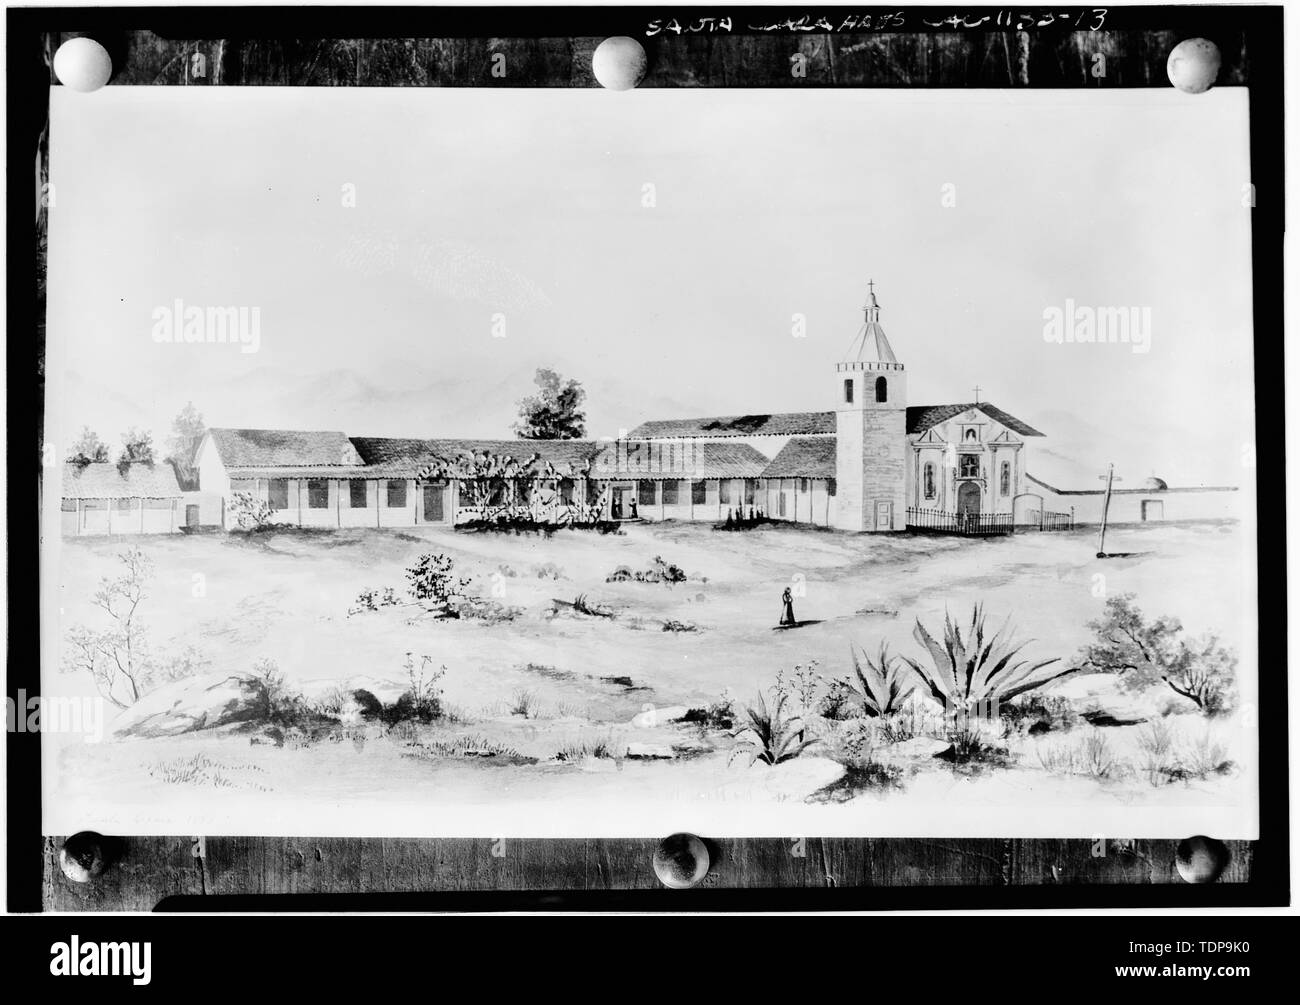 Fotokopie von etwa Aquarell 1870 in der Gesellschaft von Kalifornien Pioniere Sammlung. Ansicht des Komplexes von Südosten - die Mission Santa Clara de Asis, Franklin und Grant Straßen, Santa Clara, Santa Clara County, CA Stockfoto